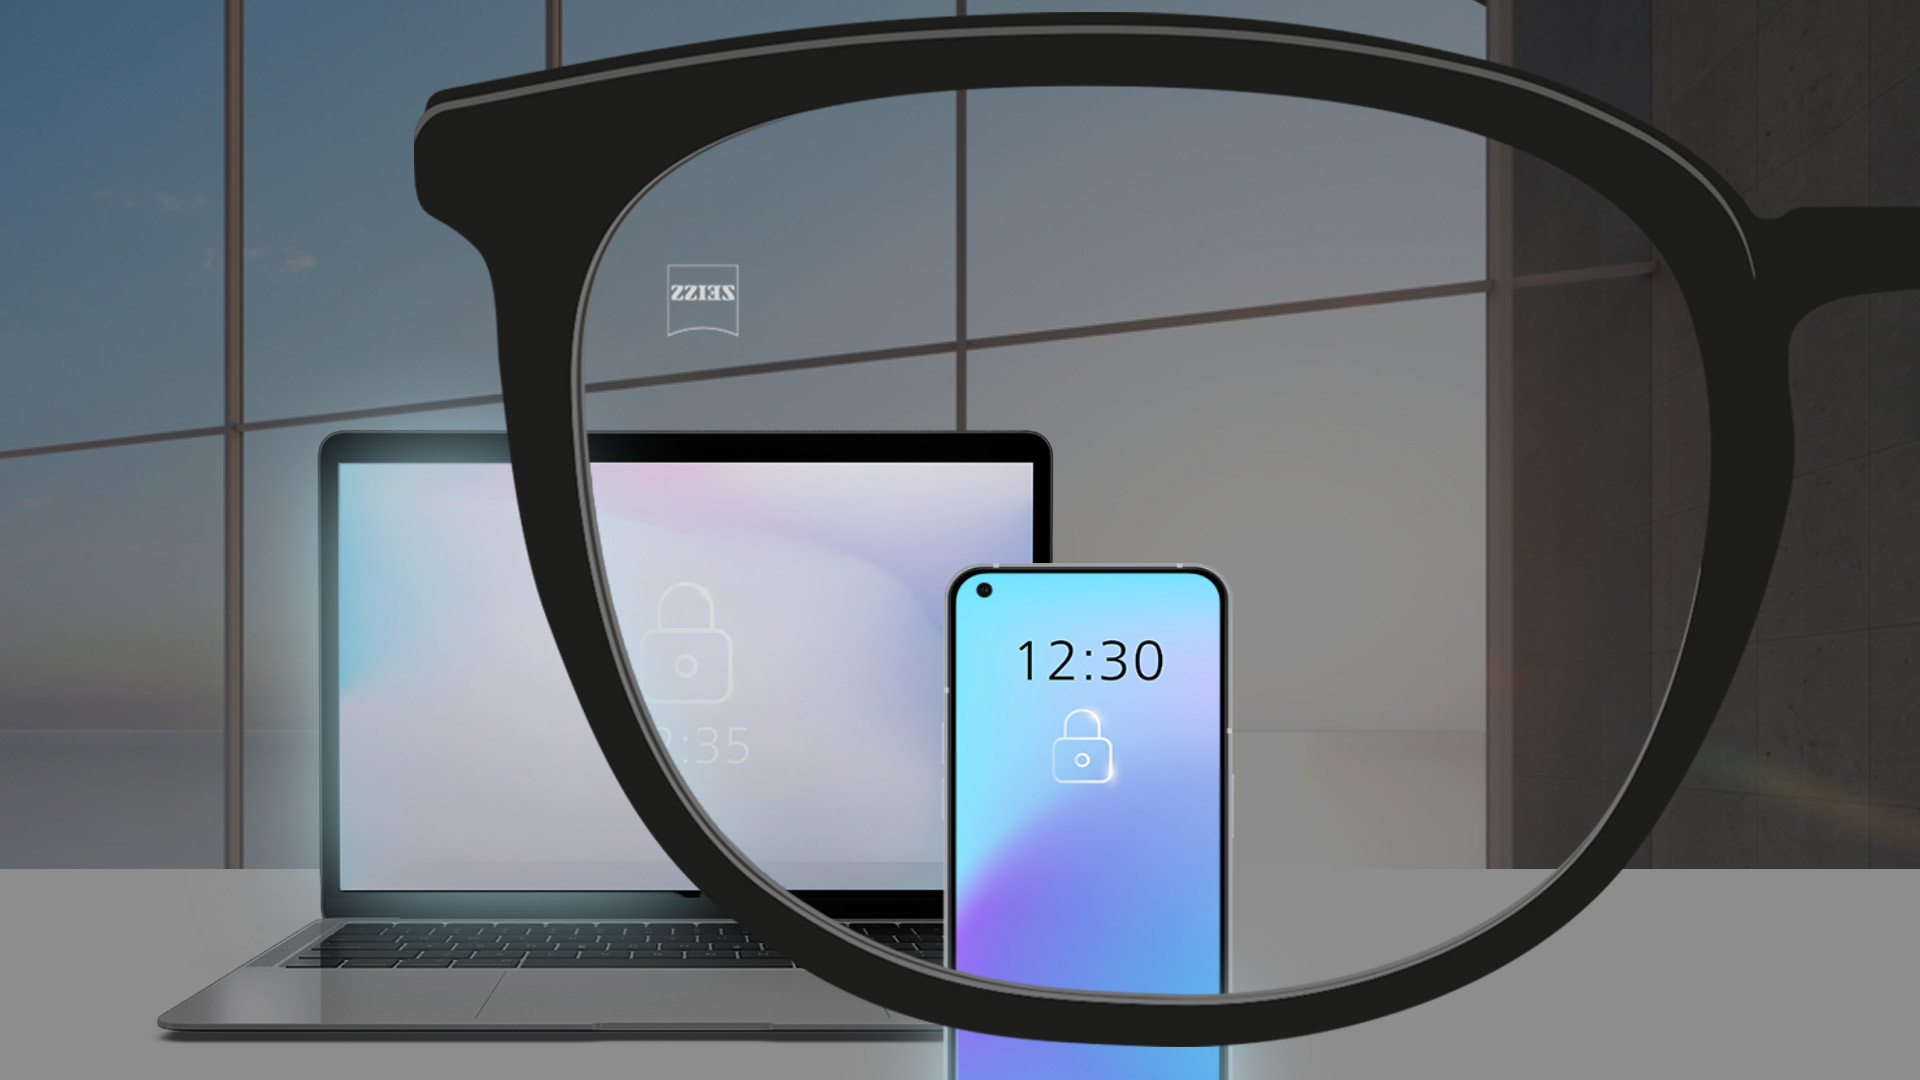 Abbildung mit Blick auf einen Laptop und ein Smartphone in einem abgedunkelten Raum.